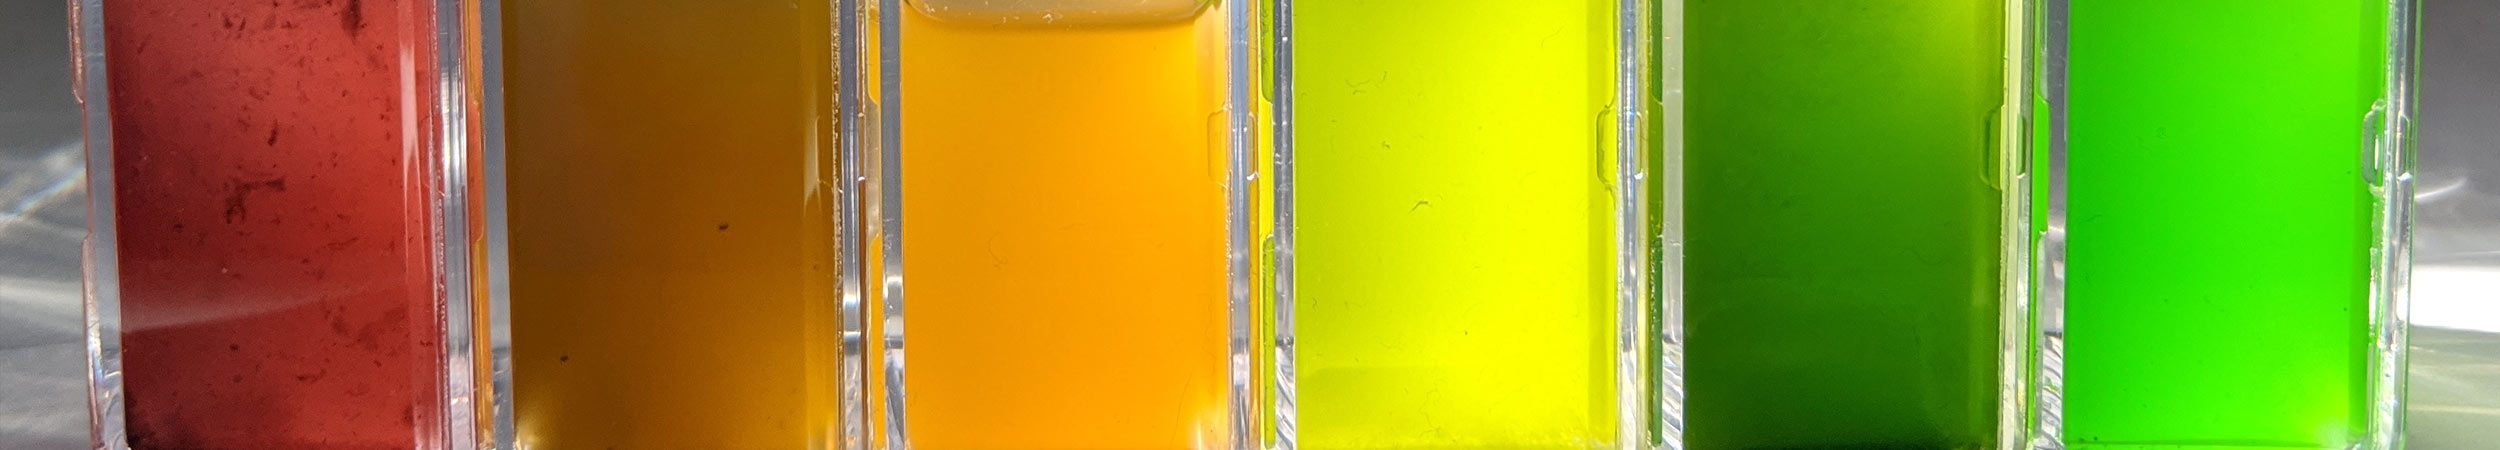 multi coloured algae in glass bottles